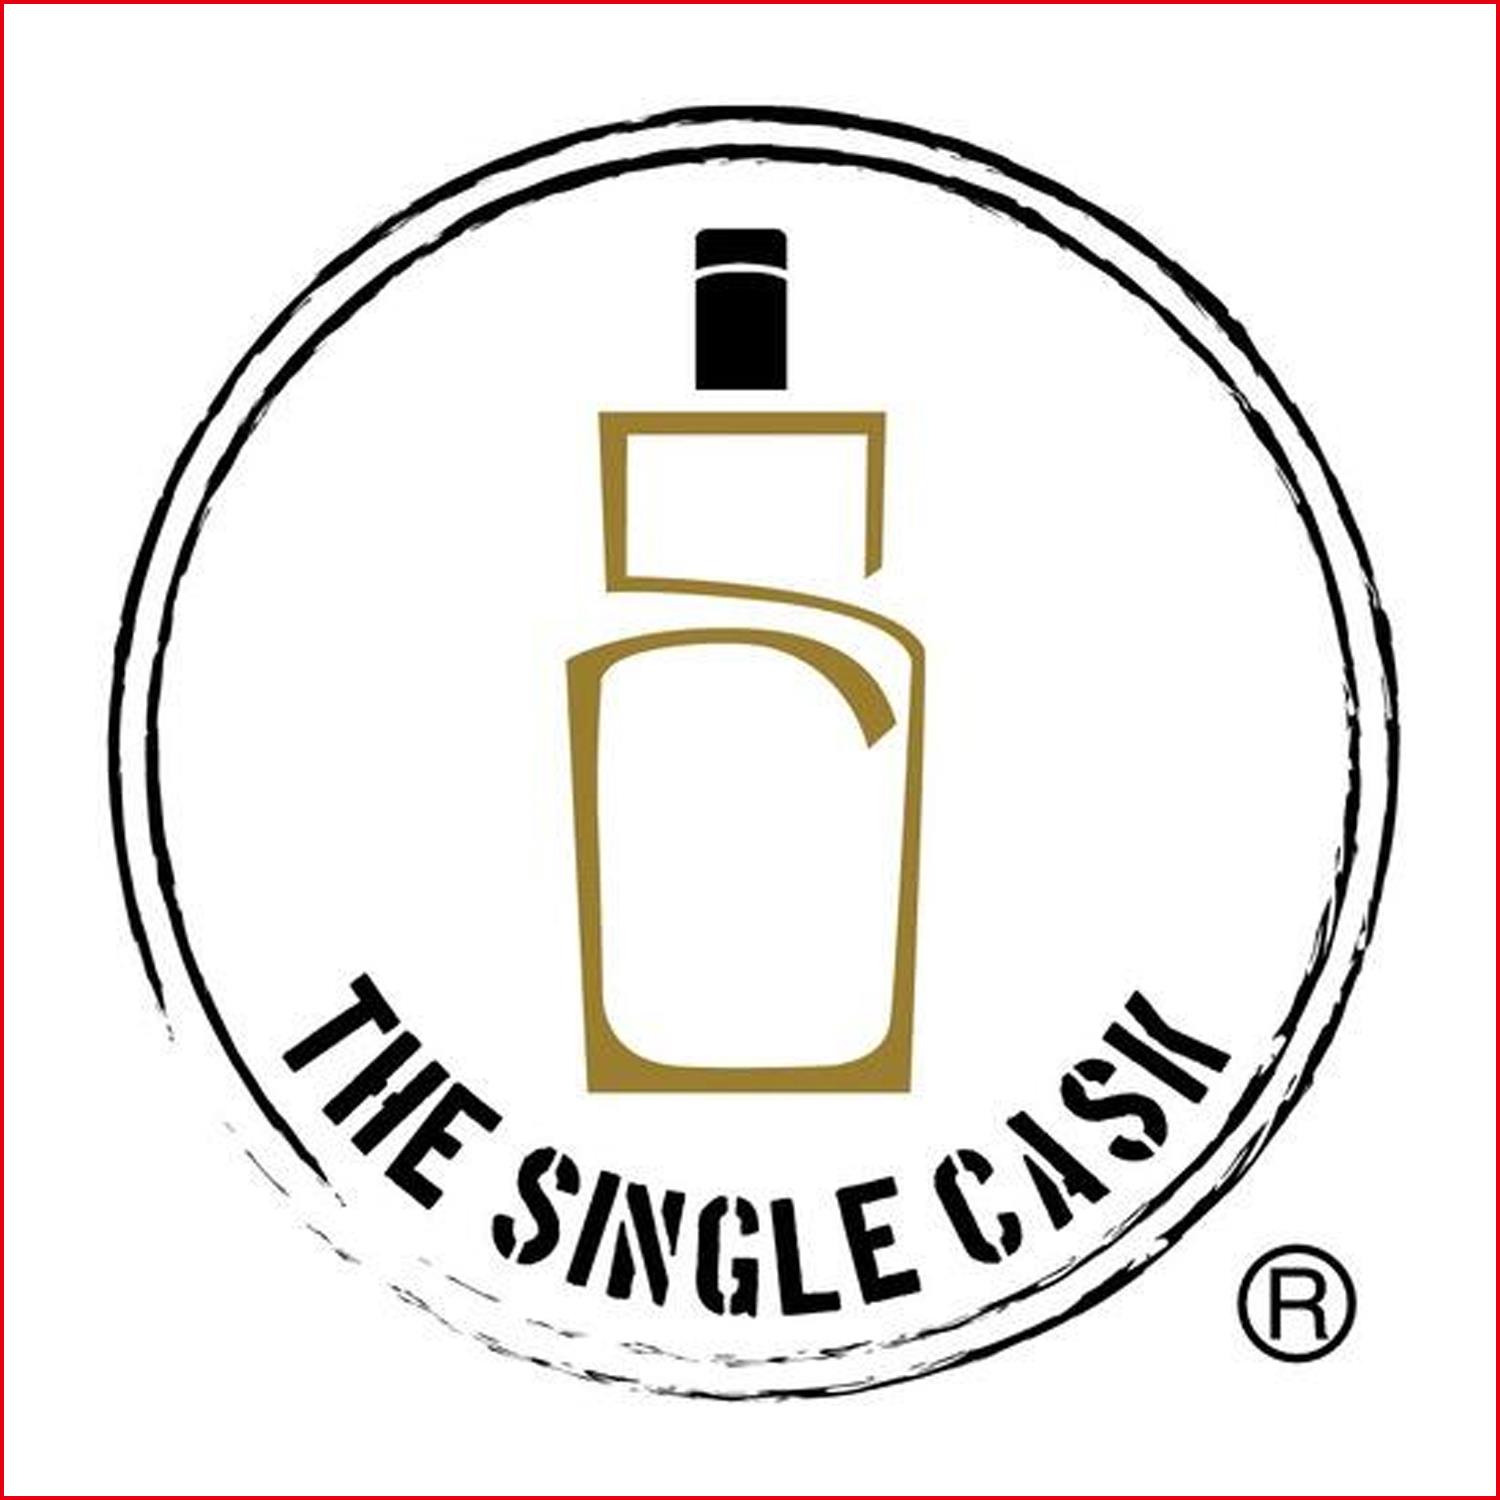 THE SINGLE CASK The Single Cask